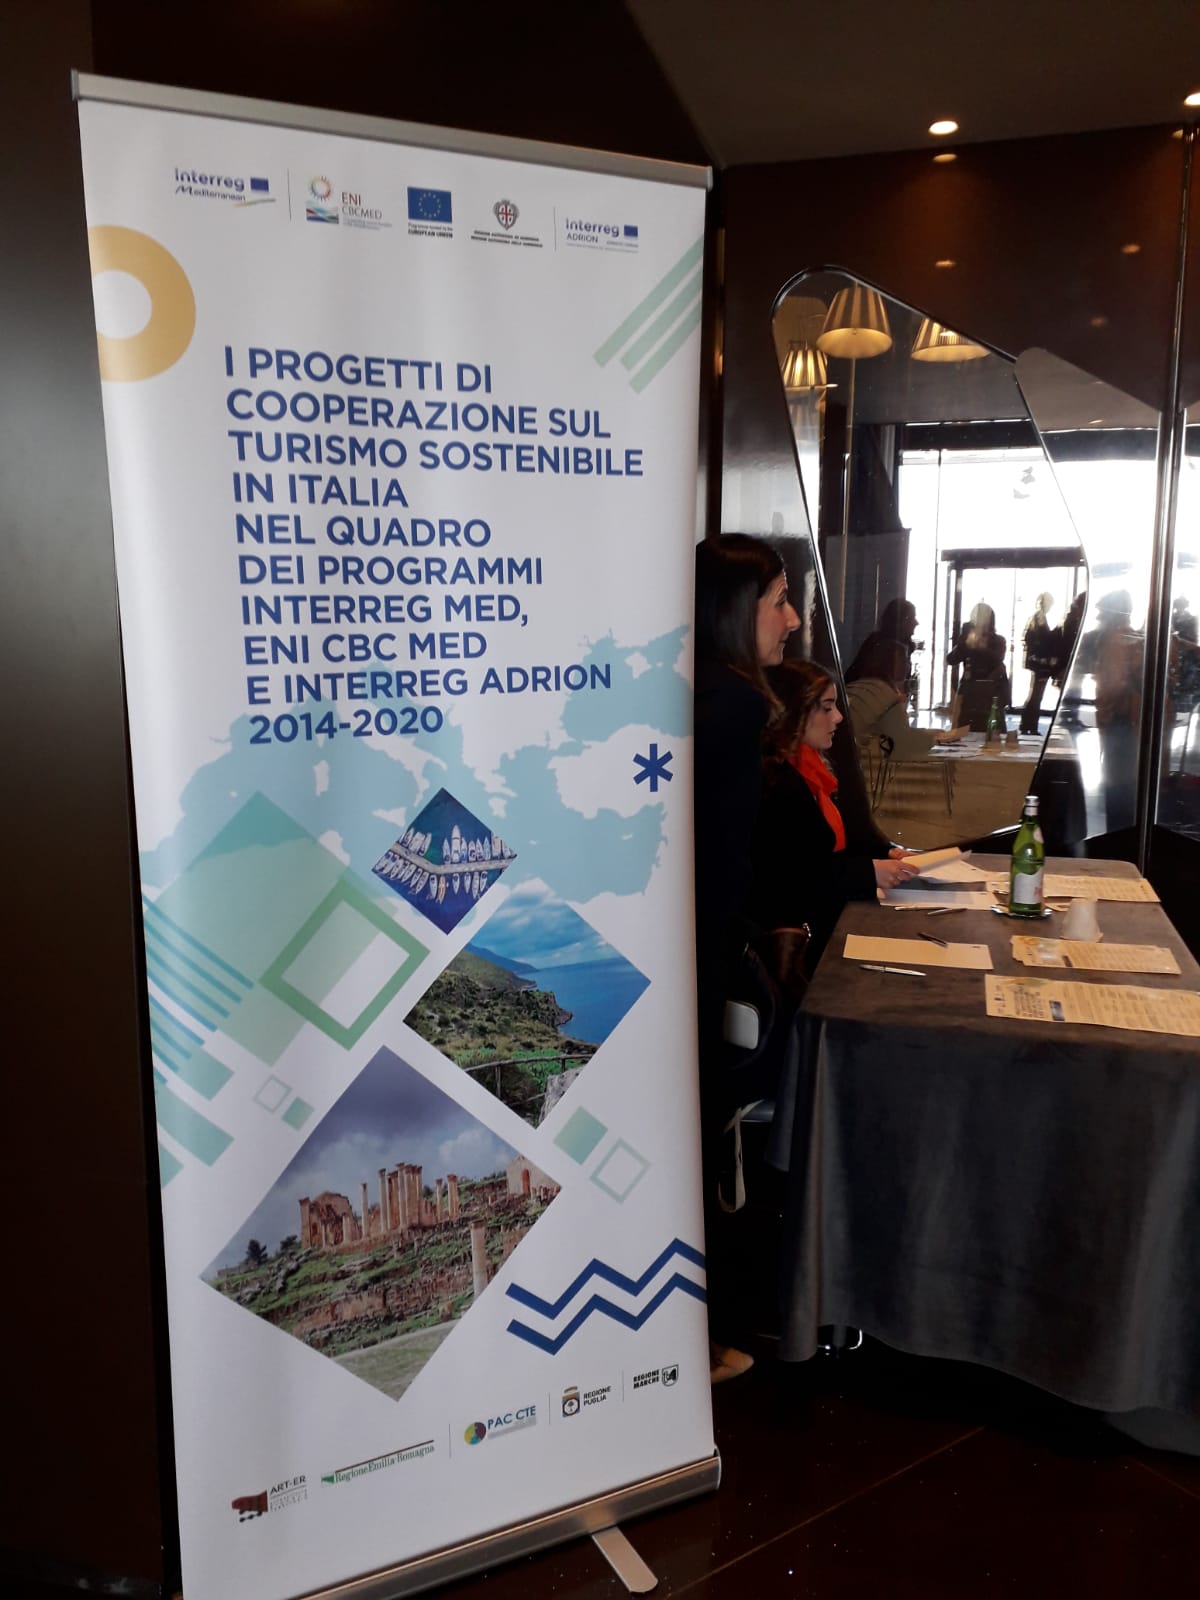 Galleria Bari, 30 marzo 2023 – Evento “Presentazione del Rapporto di Valutazione dei progetti di cooperazione sul Turismo Sostenibile, nel quadro dei Programmi Interreg Euro-MED, ENI CBC Med ed Interreg ADRION 2014-2020” - Diapositiva 2 di 14